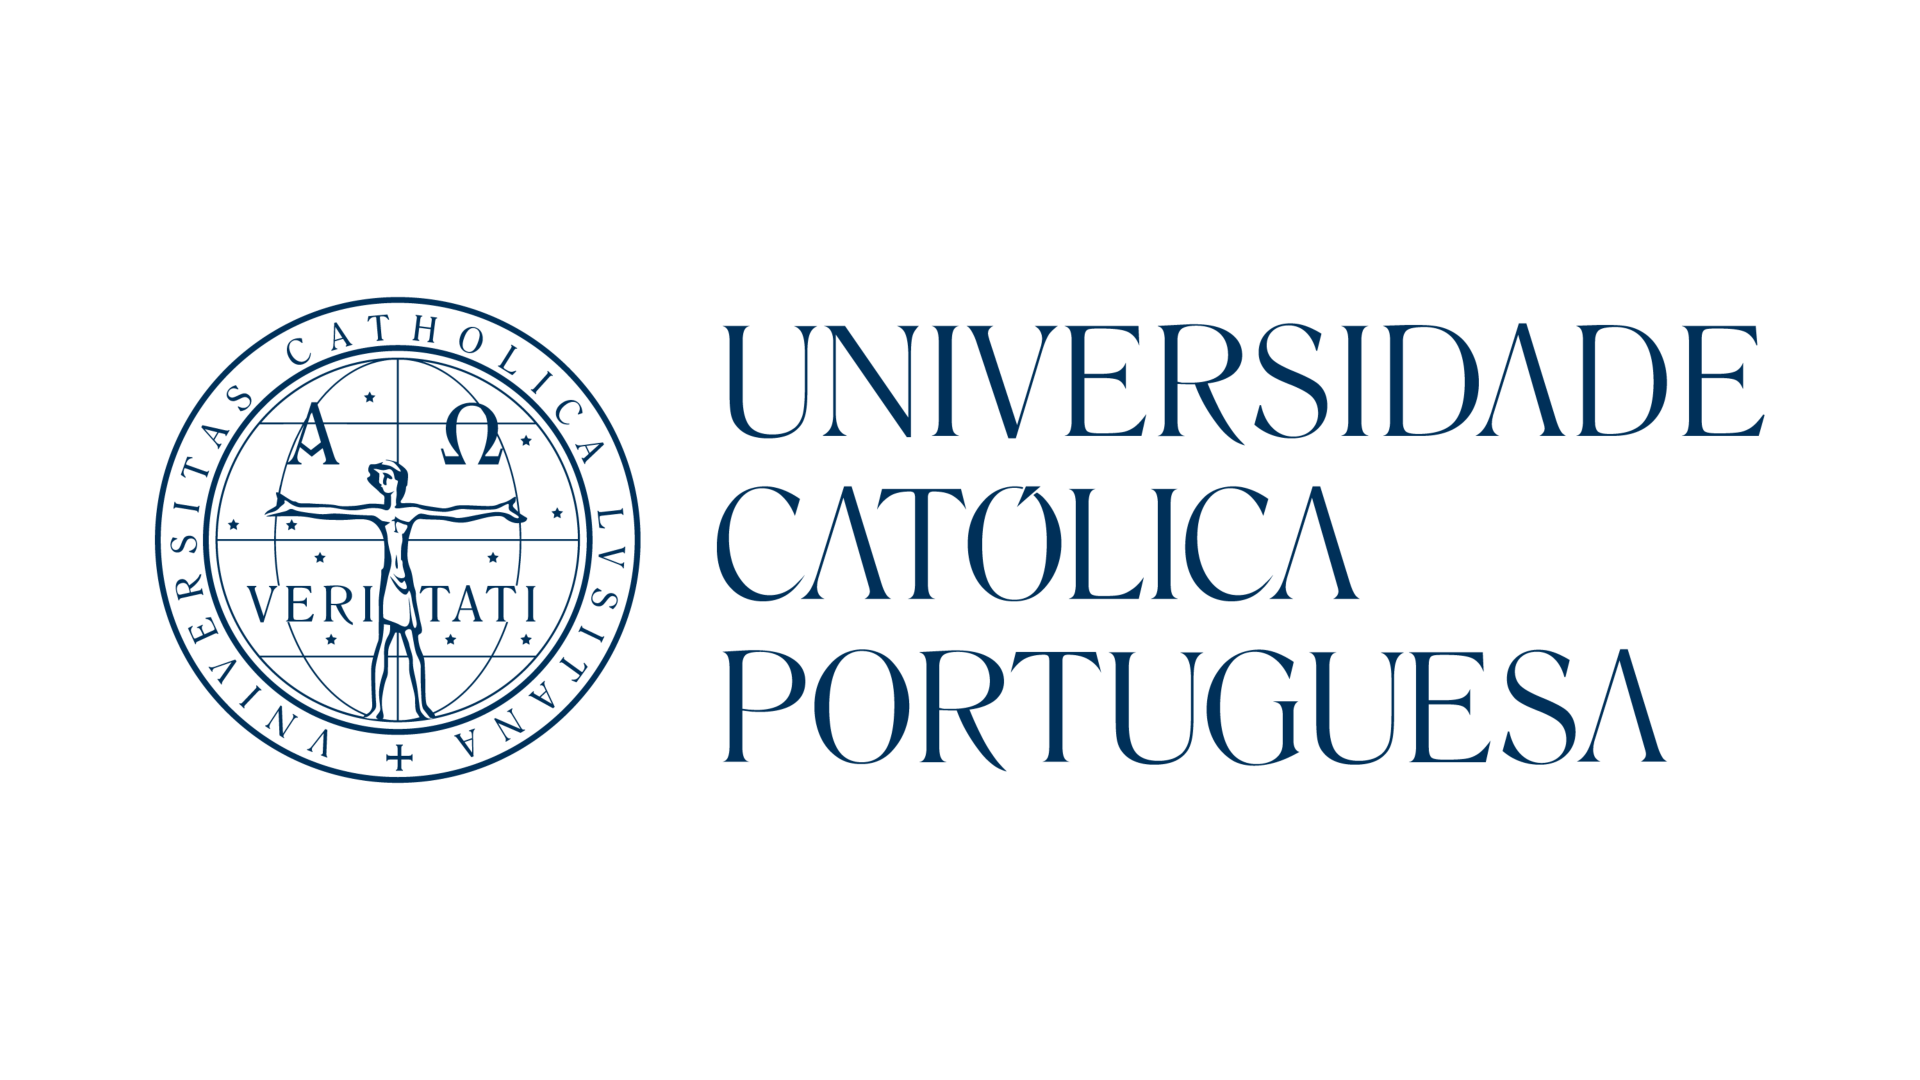 Webinaire – PORTUGAL – UNIVERSIDADE CATÓLICA PORTUGUESA